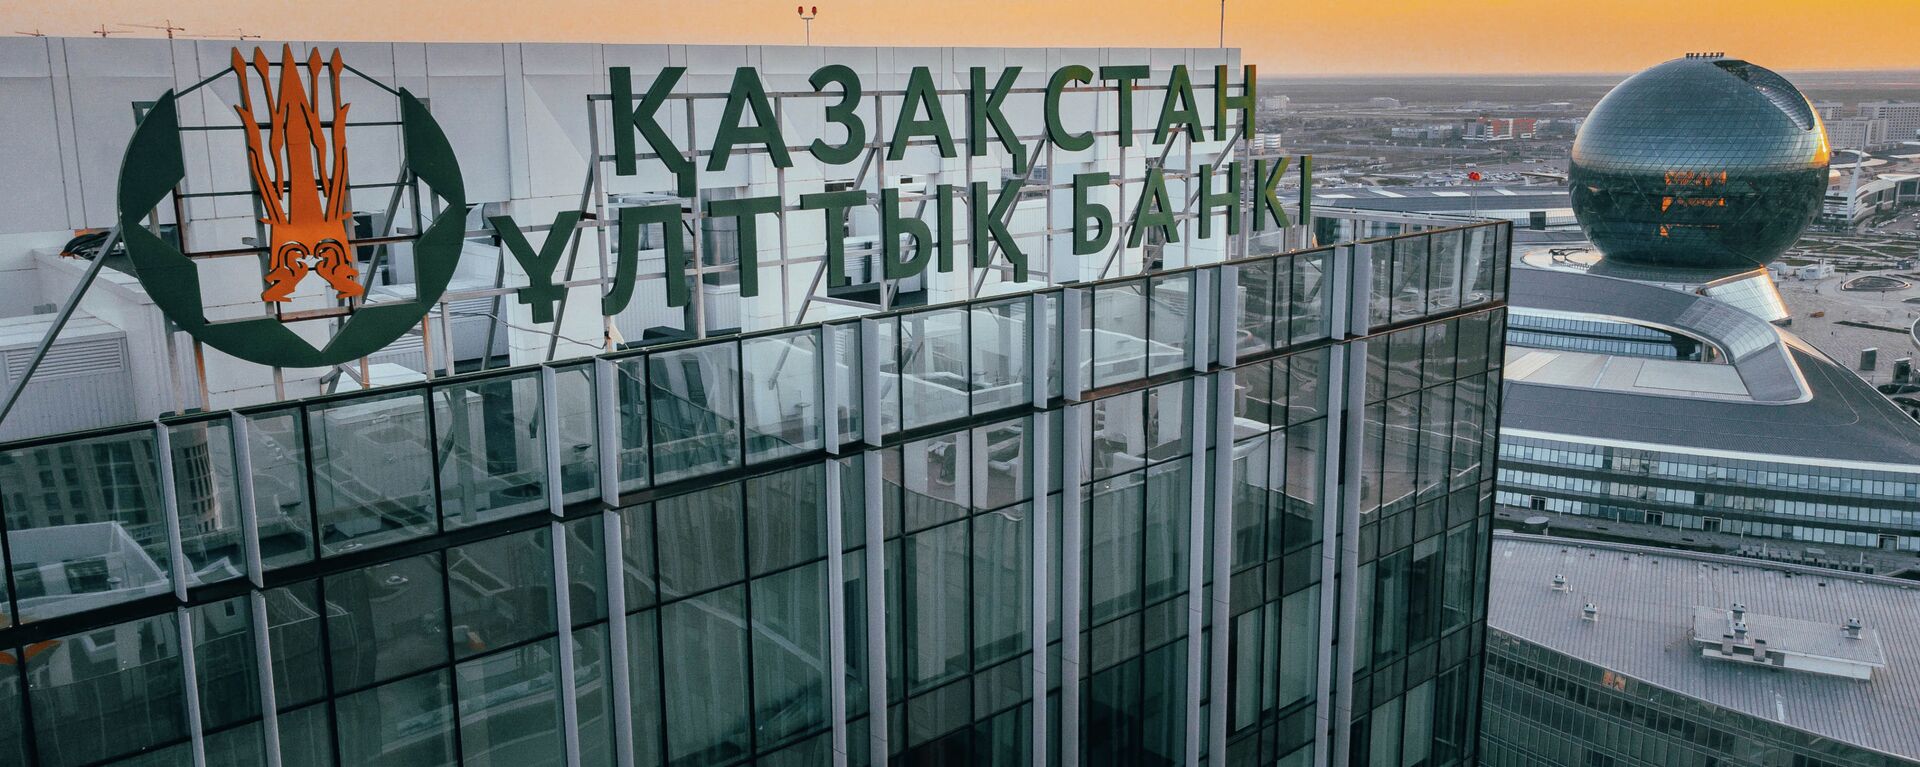 Национальный банк Казахстана - Sputnik Казахстан, 1920, 12.05.2021